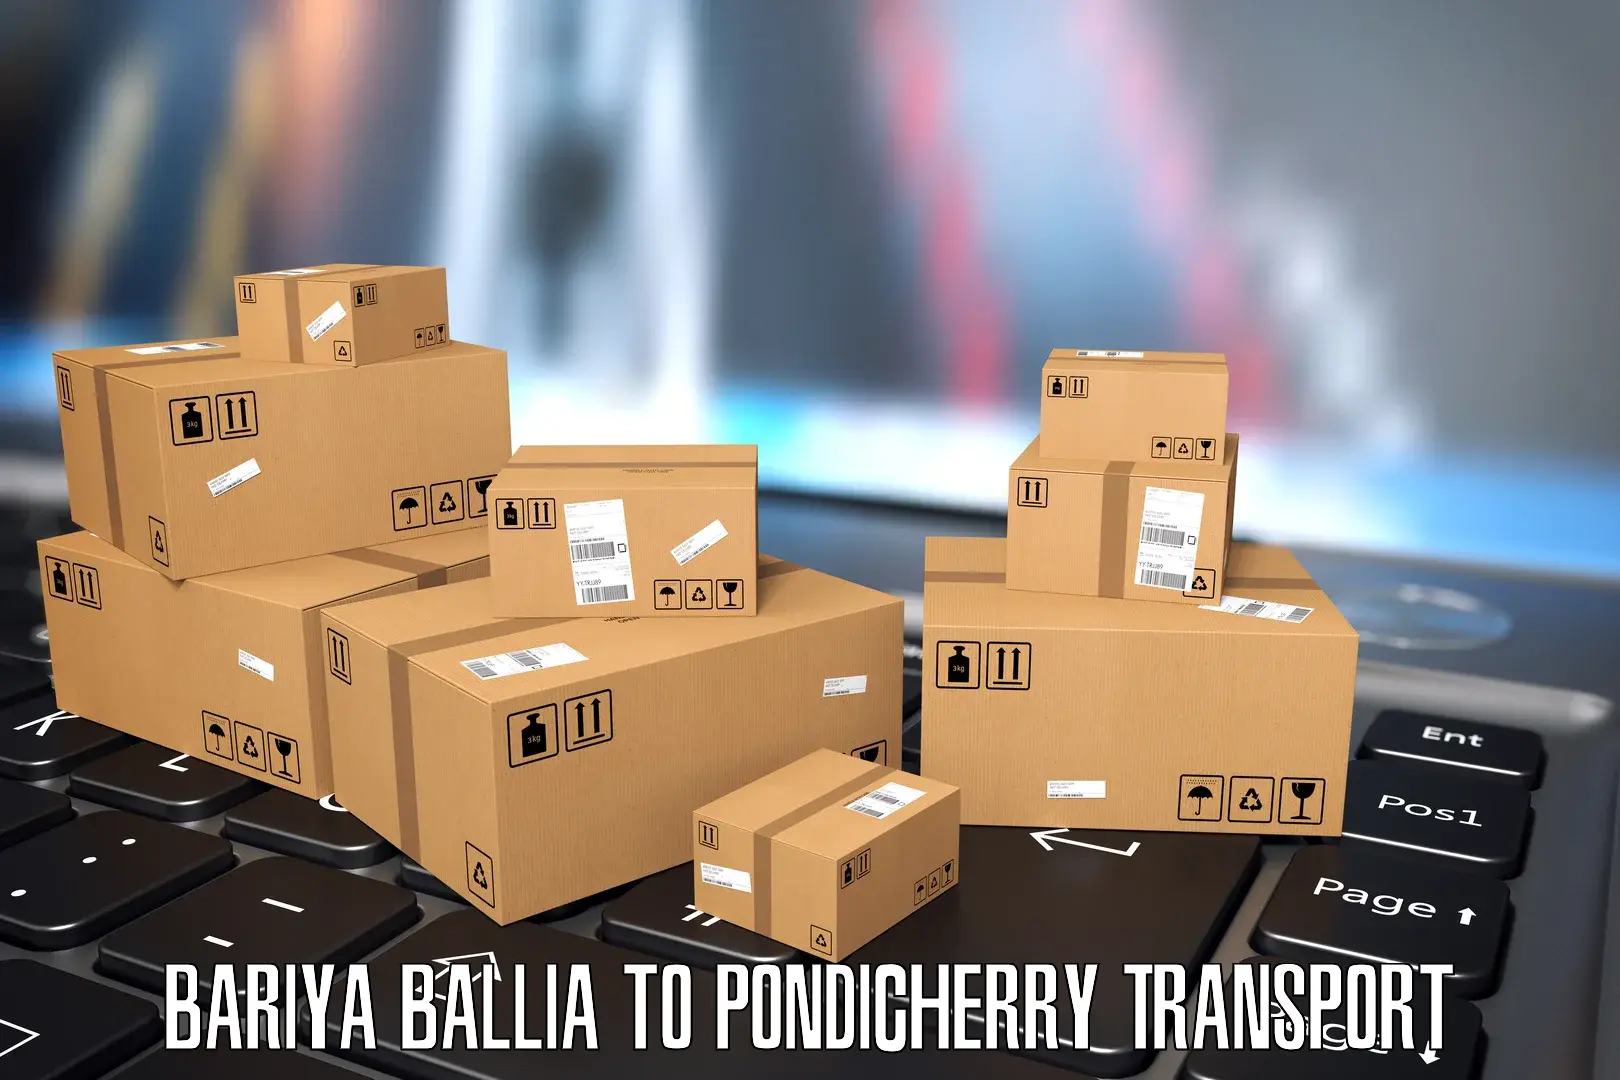 Road transport online services Bariya Ballia to Pondicherry University